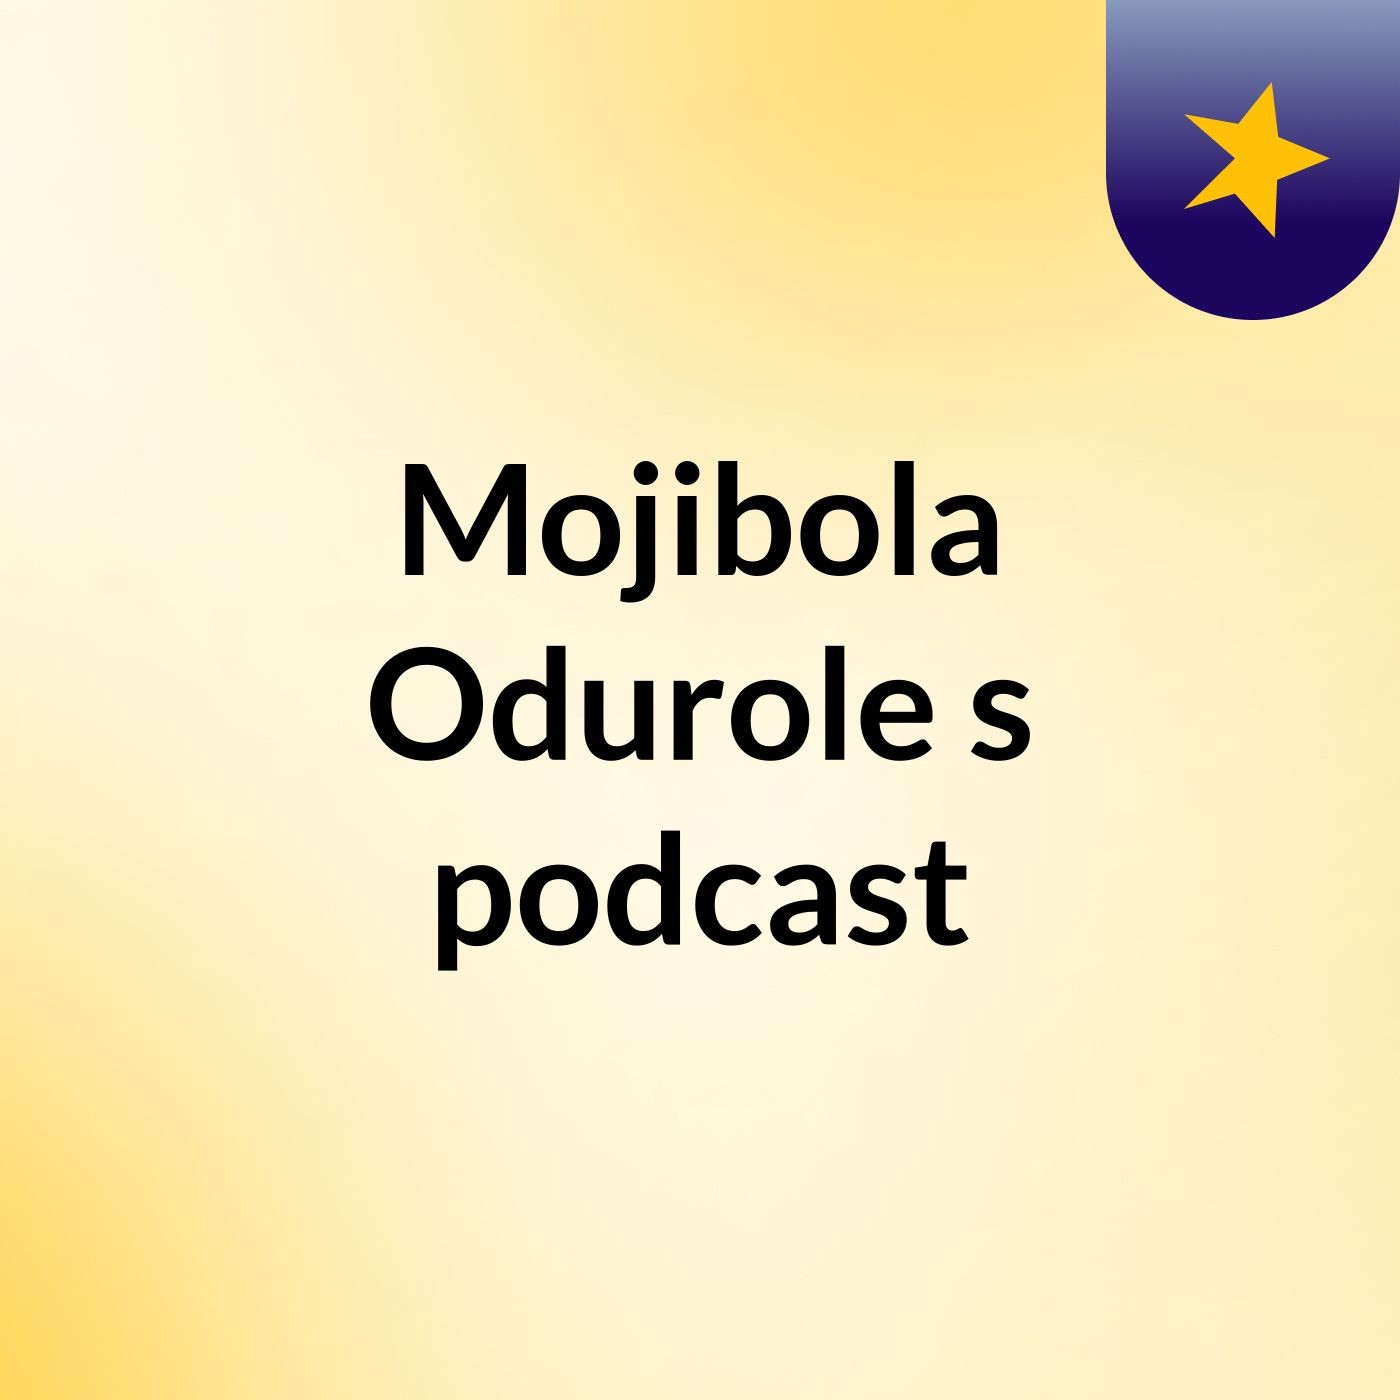 Mojibola Odurole's podcast